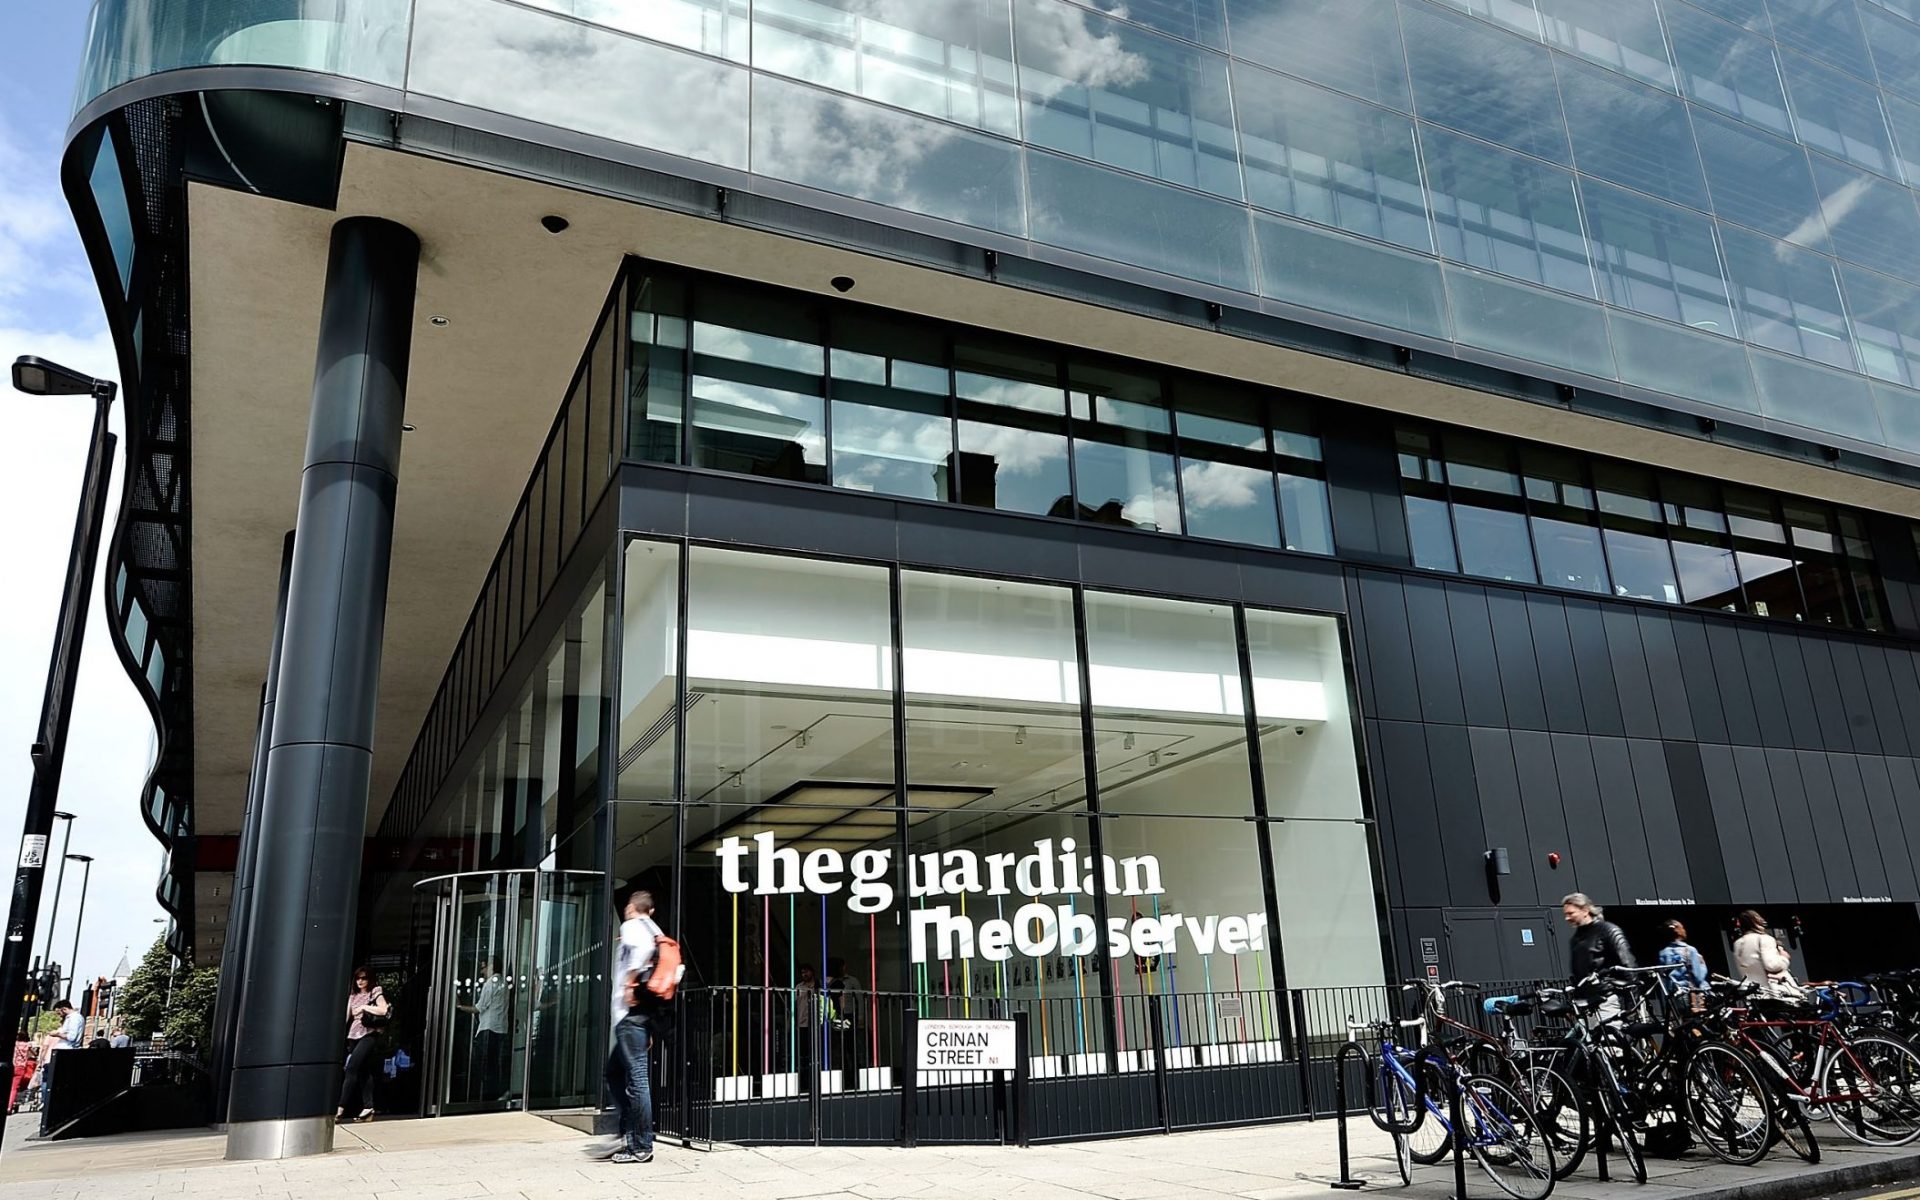 Compania-mamă a The Guardian continuă eforturile de reducere a emisiilor de gaze cu efect de seră